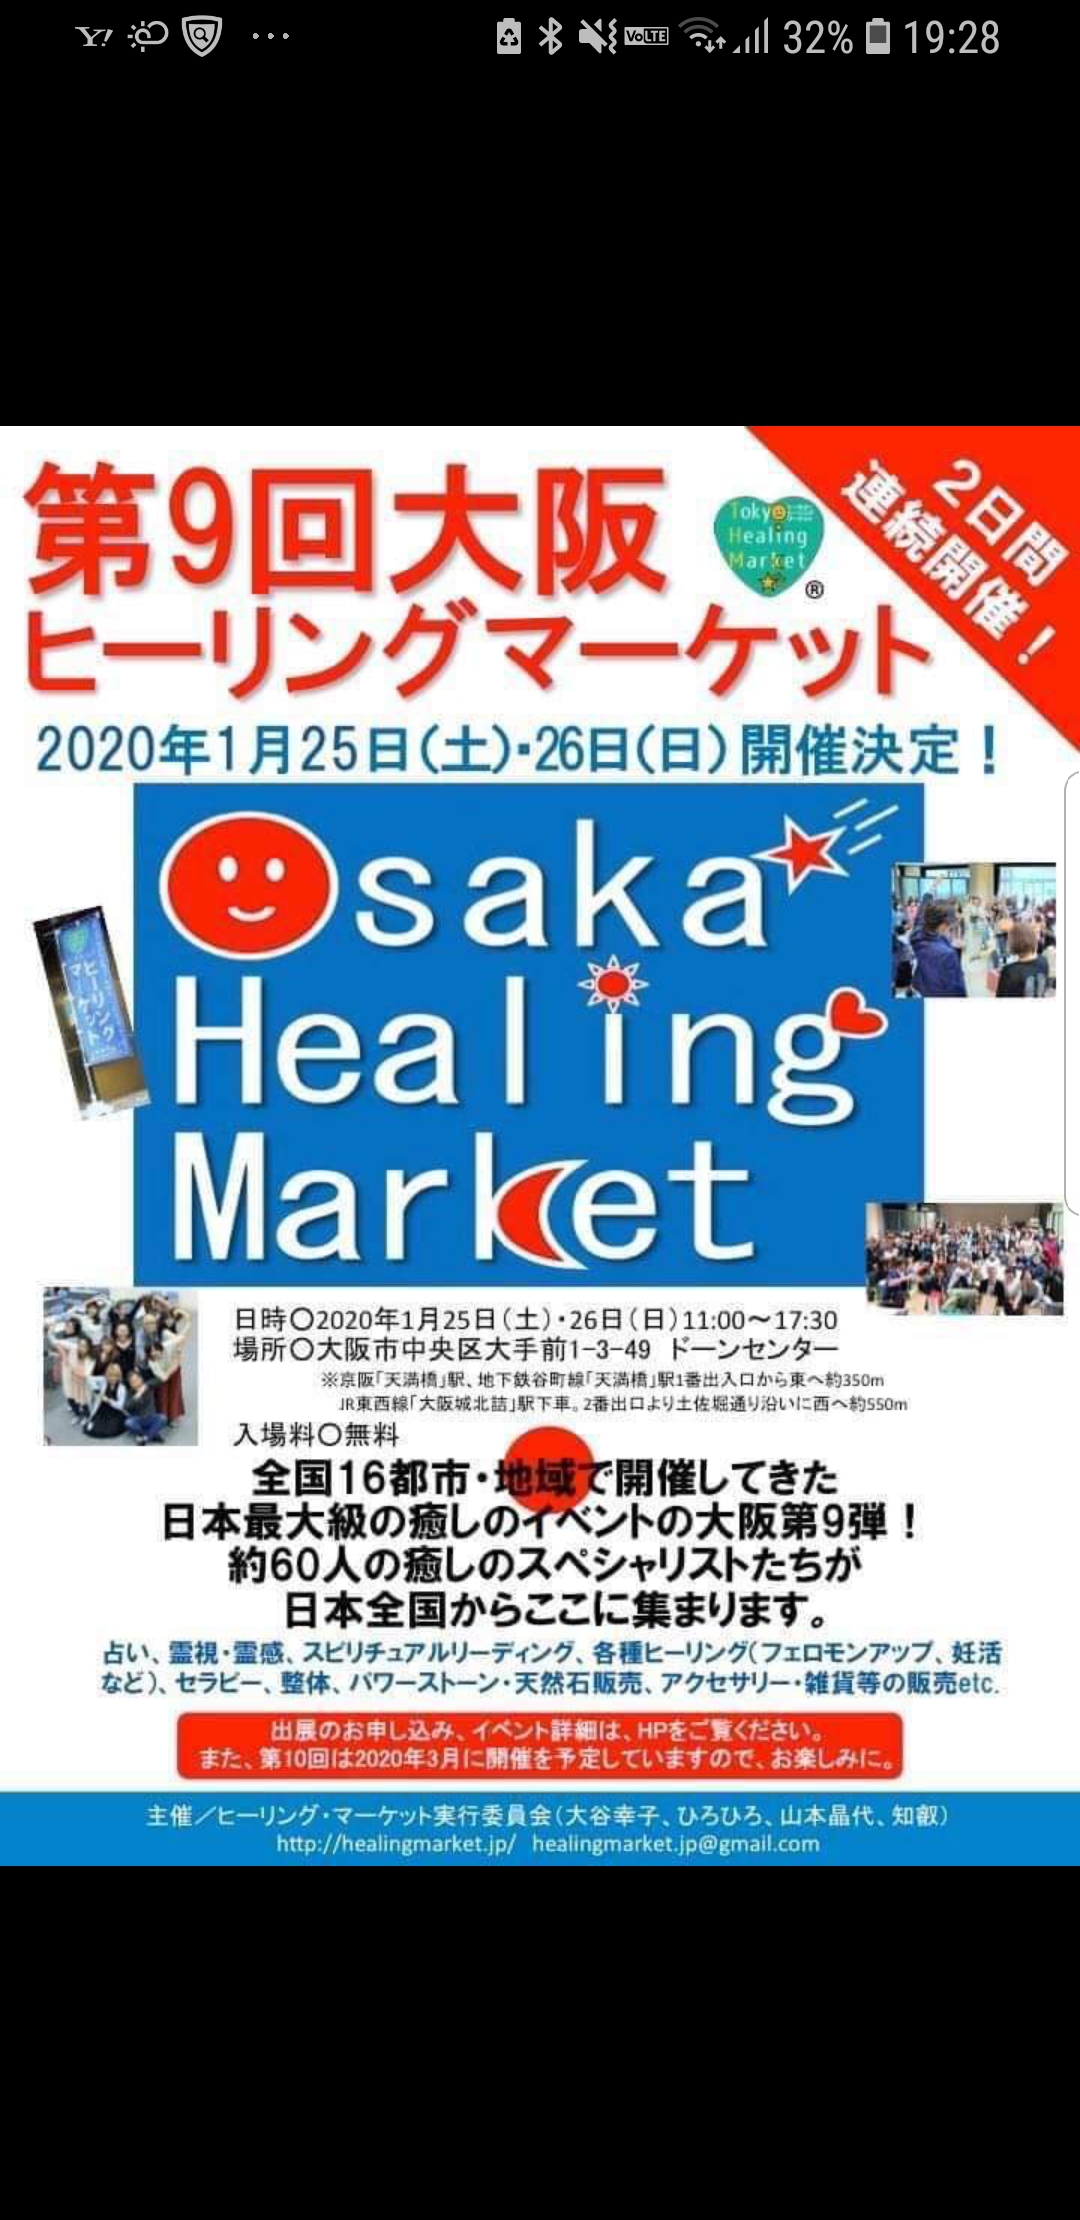 大阪ヒーリングマーケット出展‼️予約スケジュールについて‼️